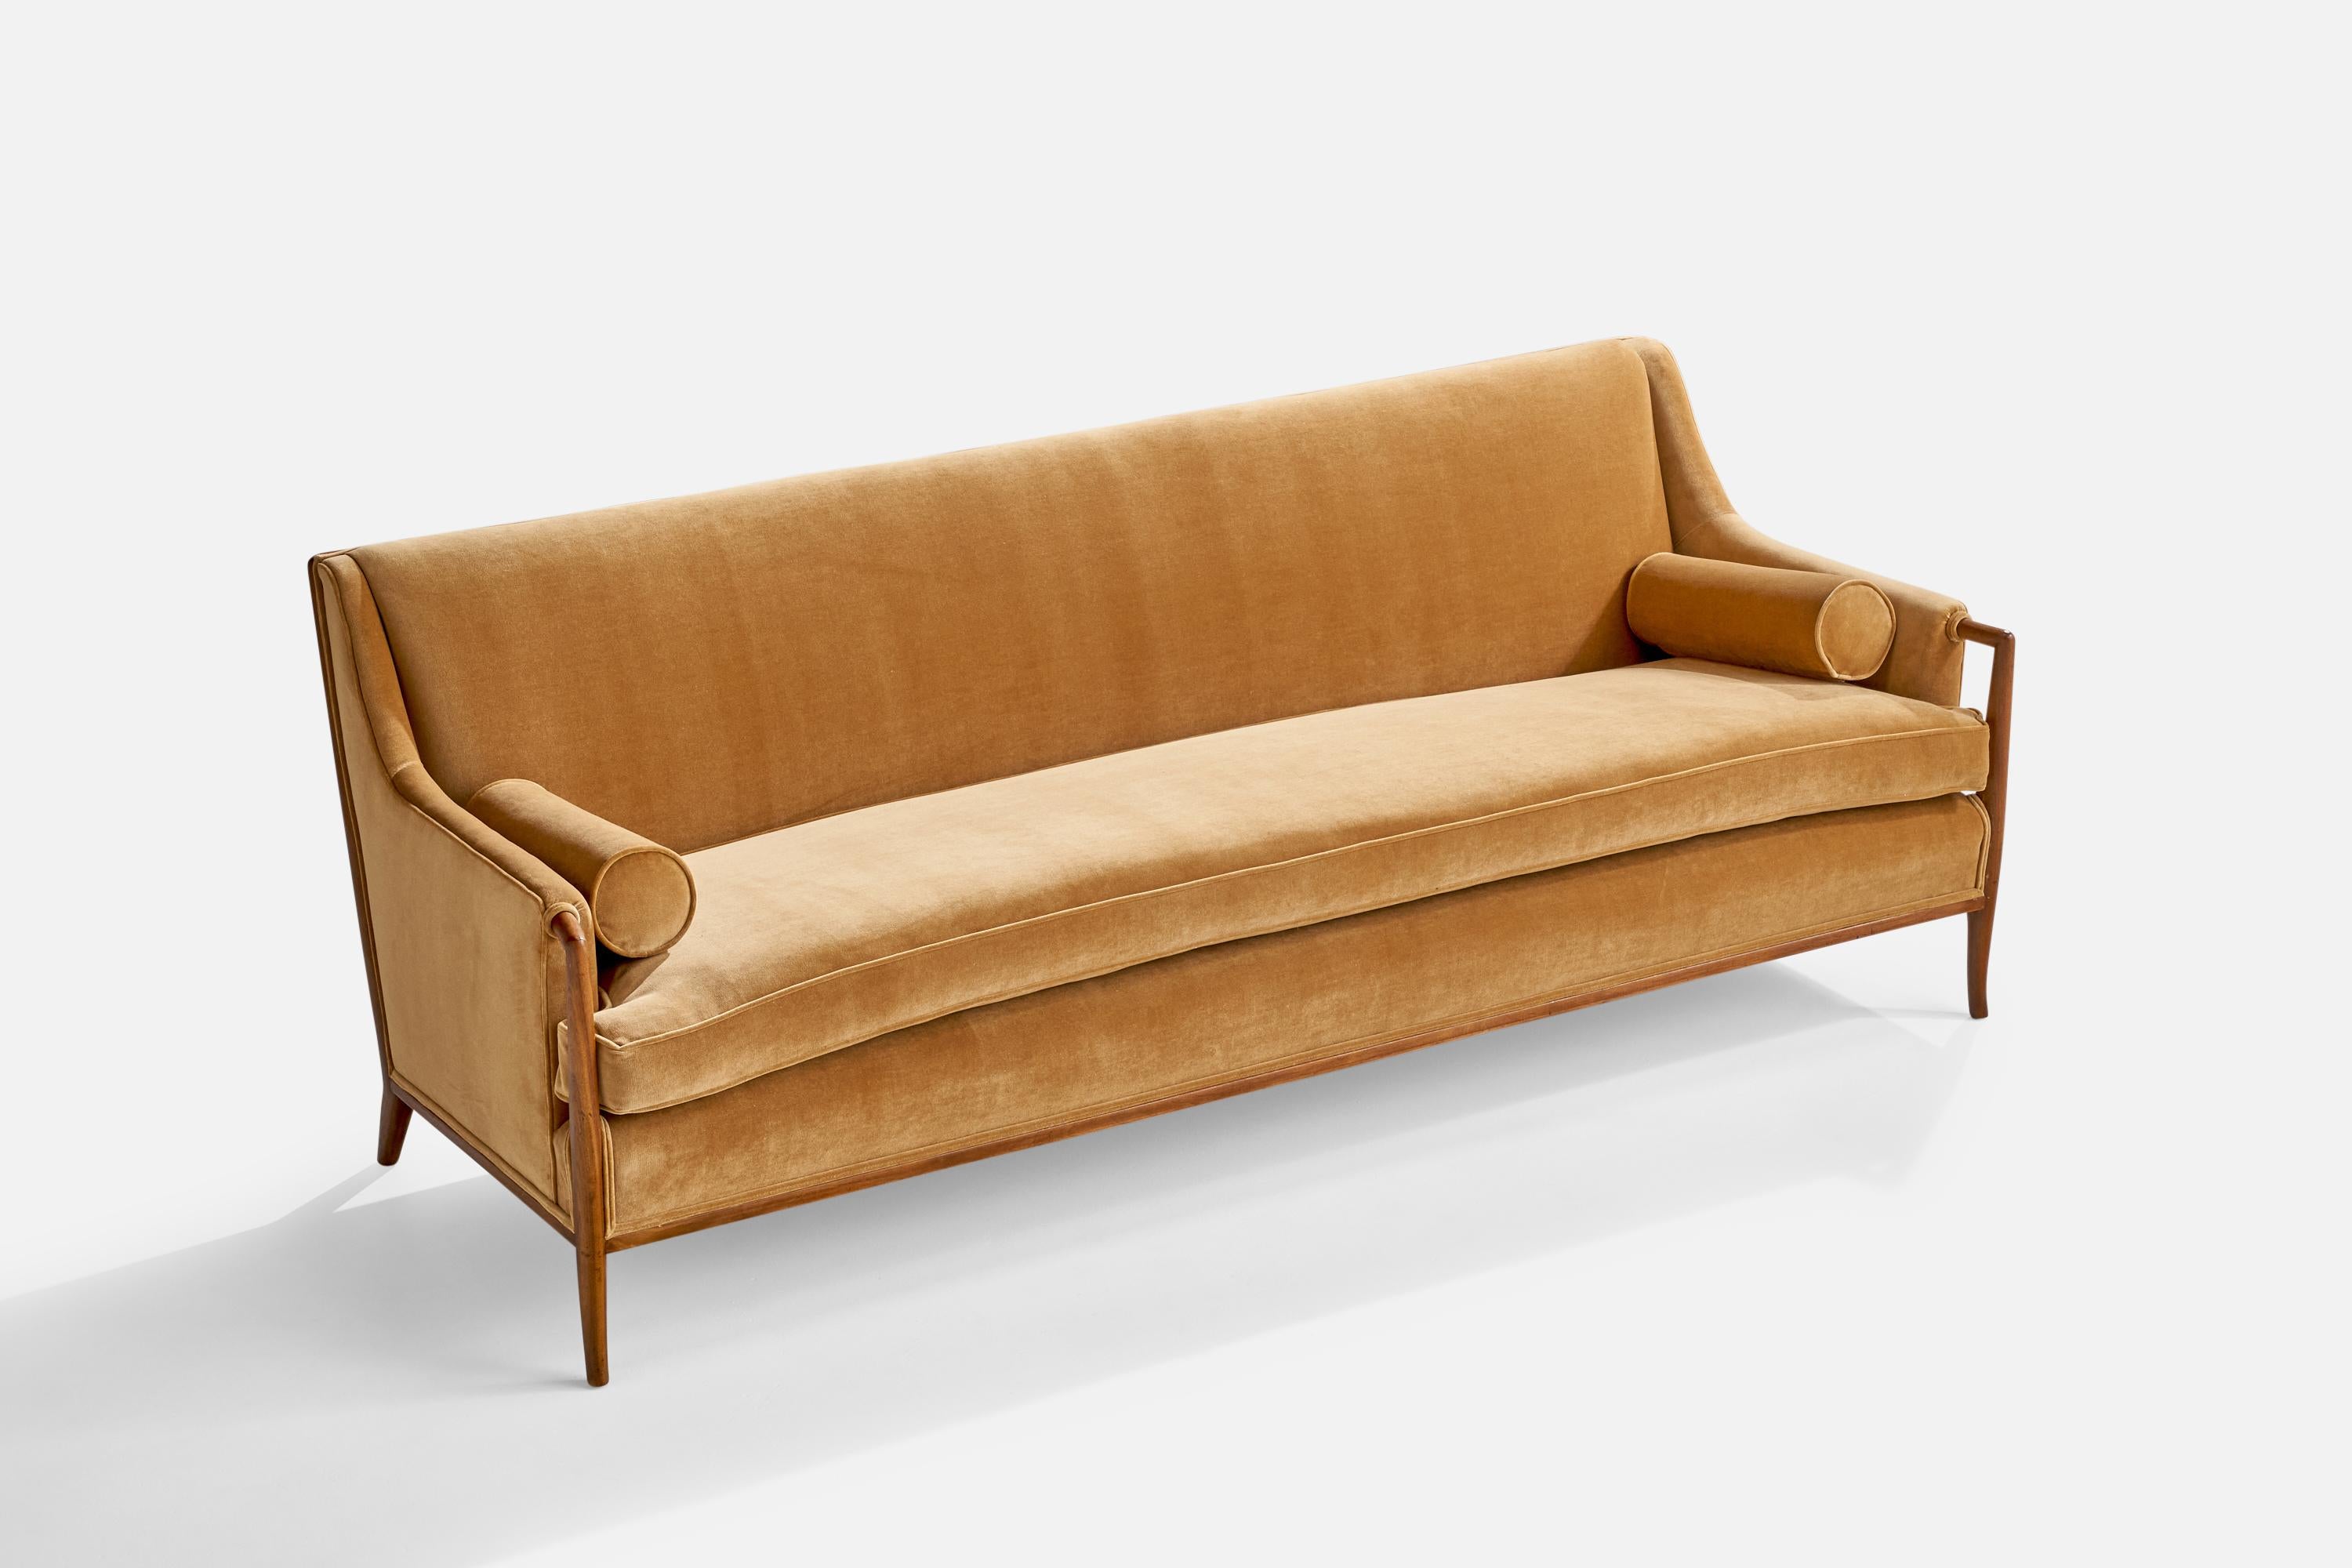 Ein Sofa aus Walnussholz und beigem Samtstoff, entworfen von T.H. Robsjohn-Gibbings und hergestellt von Widdicomb Furniture Company, Grand Rapids, Michigan, USA, 1950er Jahre.

Sitzhöhe 19,5